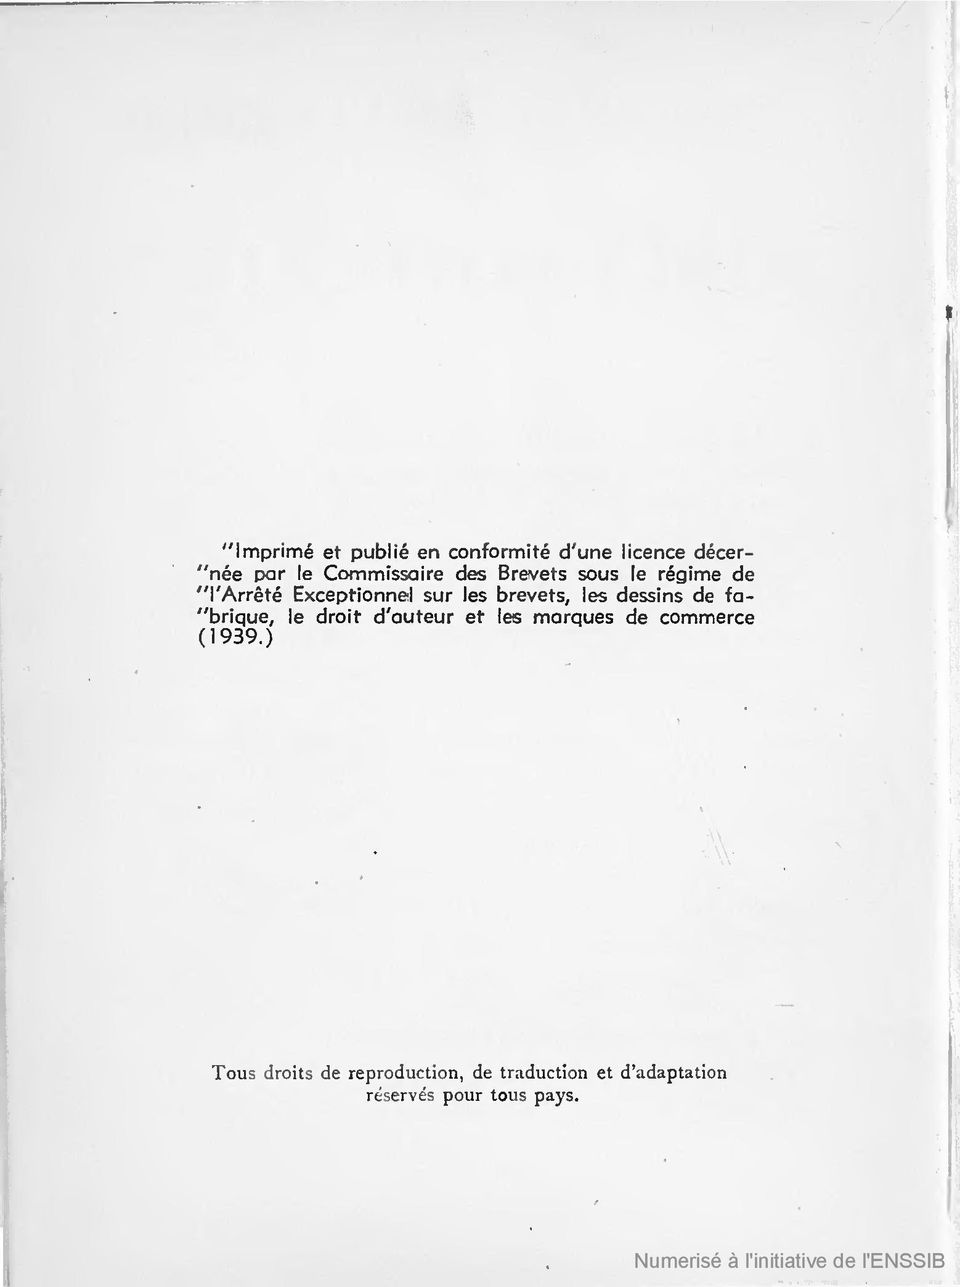 dessins de fa- "brique, le droit d'auteur et les marques de commerce (1939.